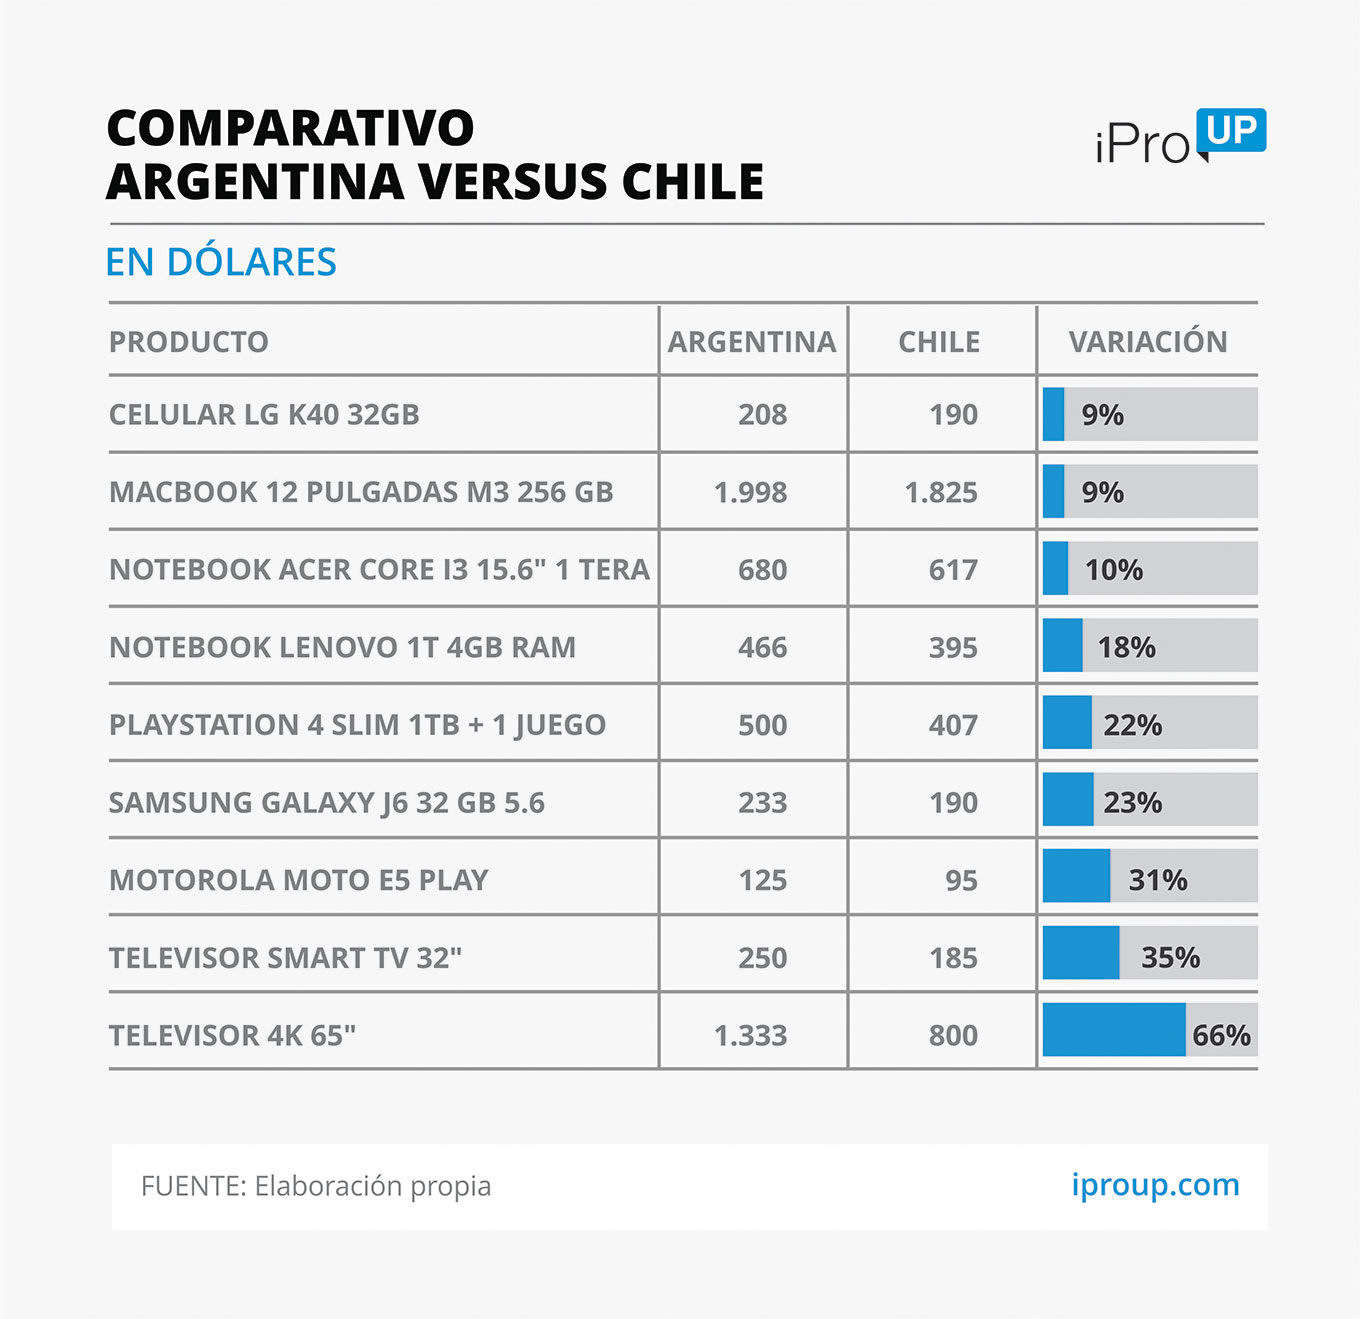 Dolar ke $ 60 di Argentina, "membunuh" tur belanja ke Chili?: Kesenjangan harga di TV, ponsel dan notebook 1